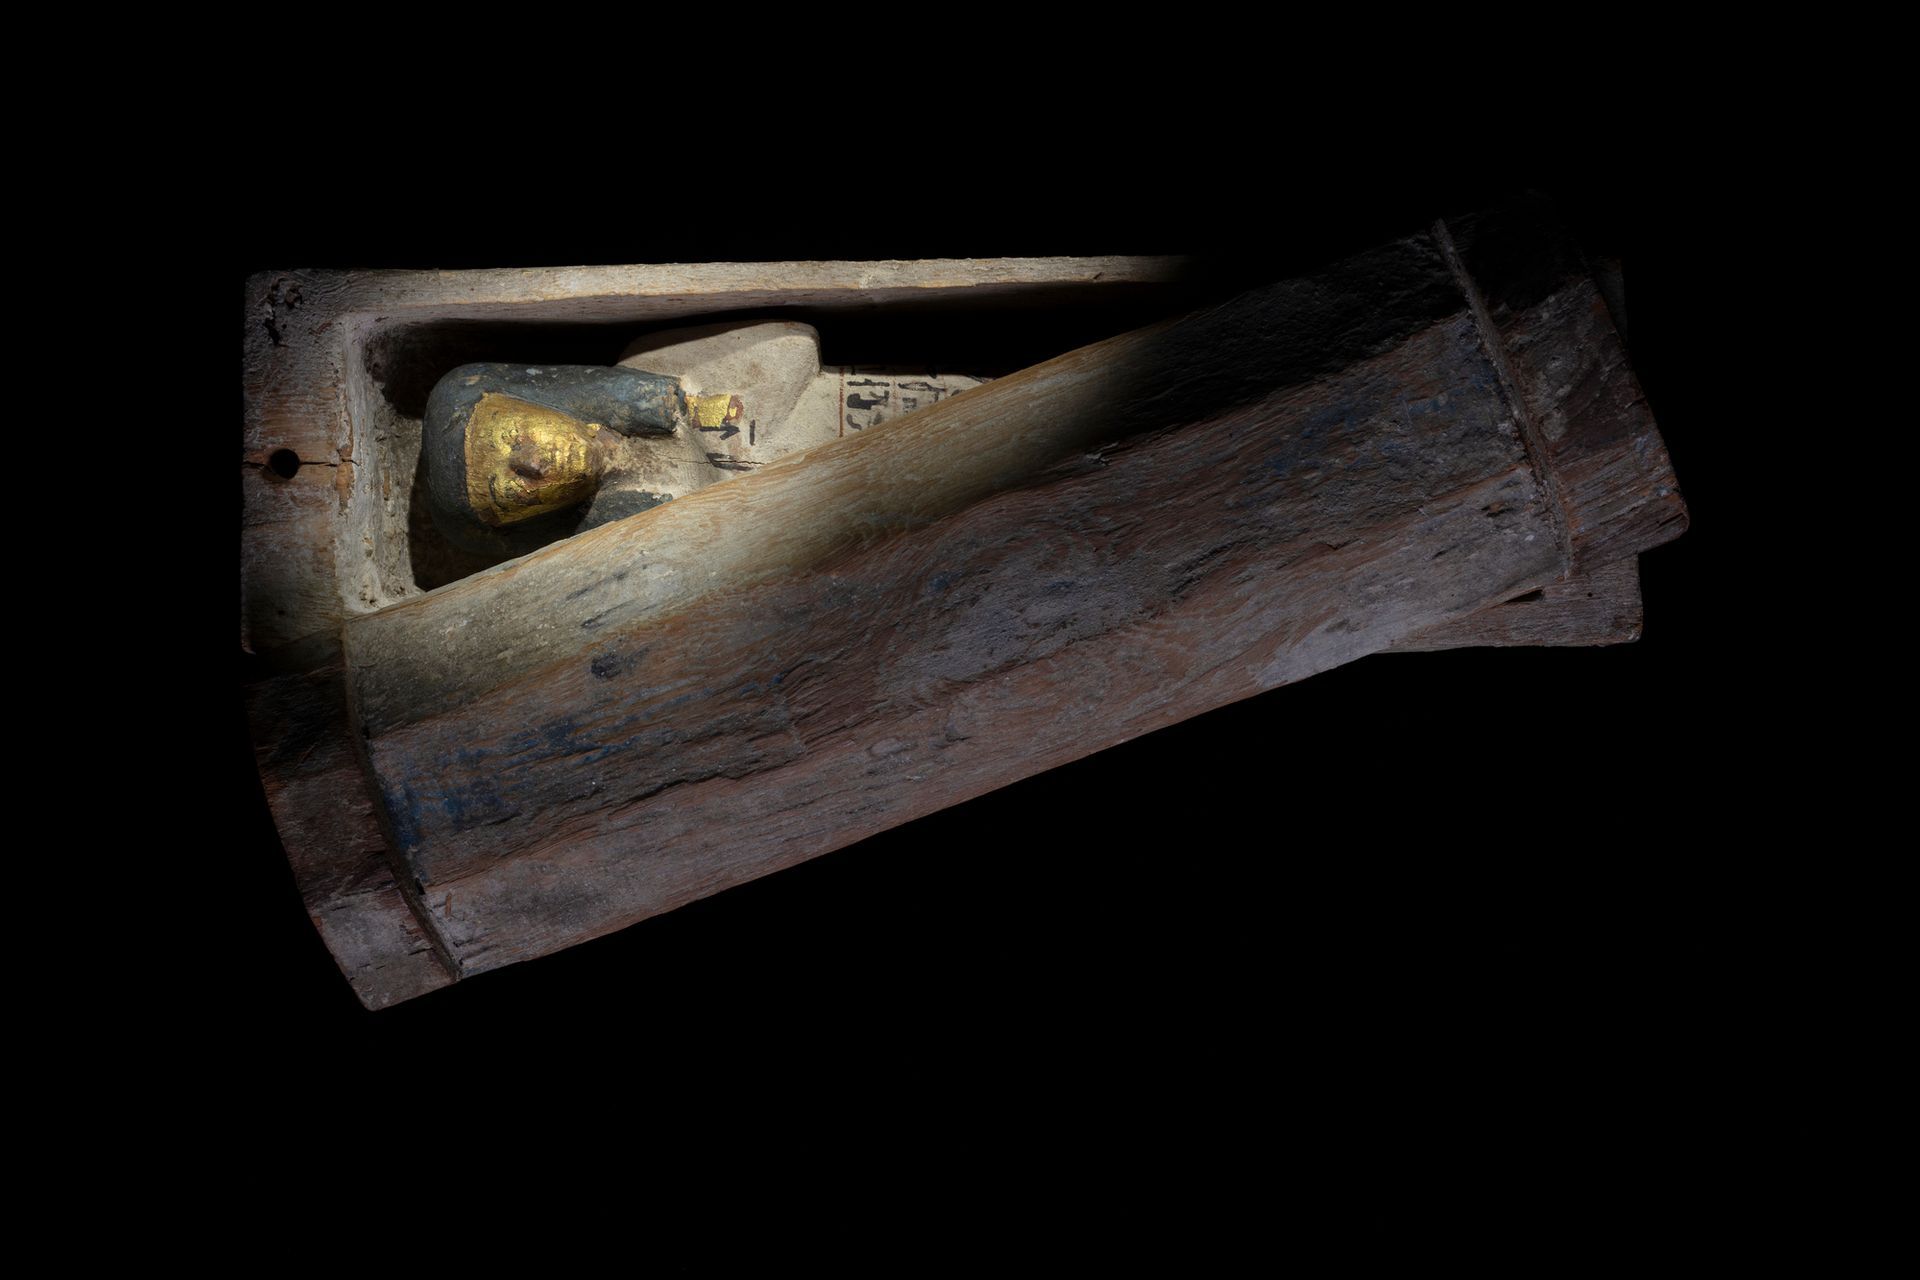 ה"שבתי" של סנסנב, פסלון קבורה מצרי עתיק. 

באדיבות אוניברסיטת סידני


